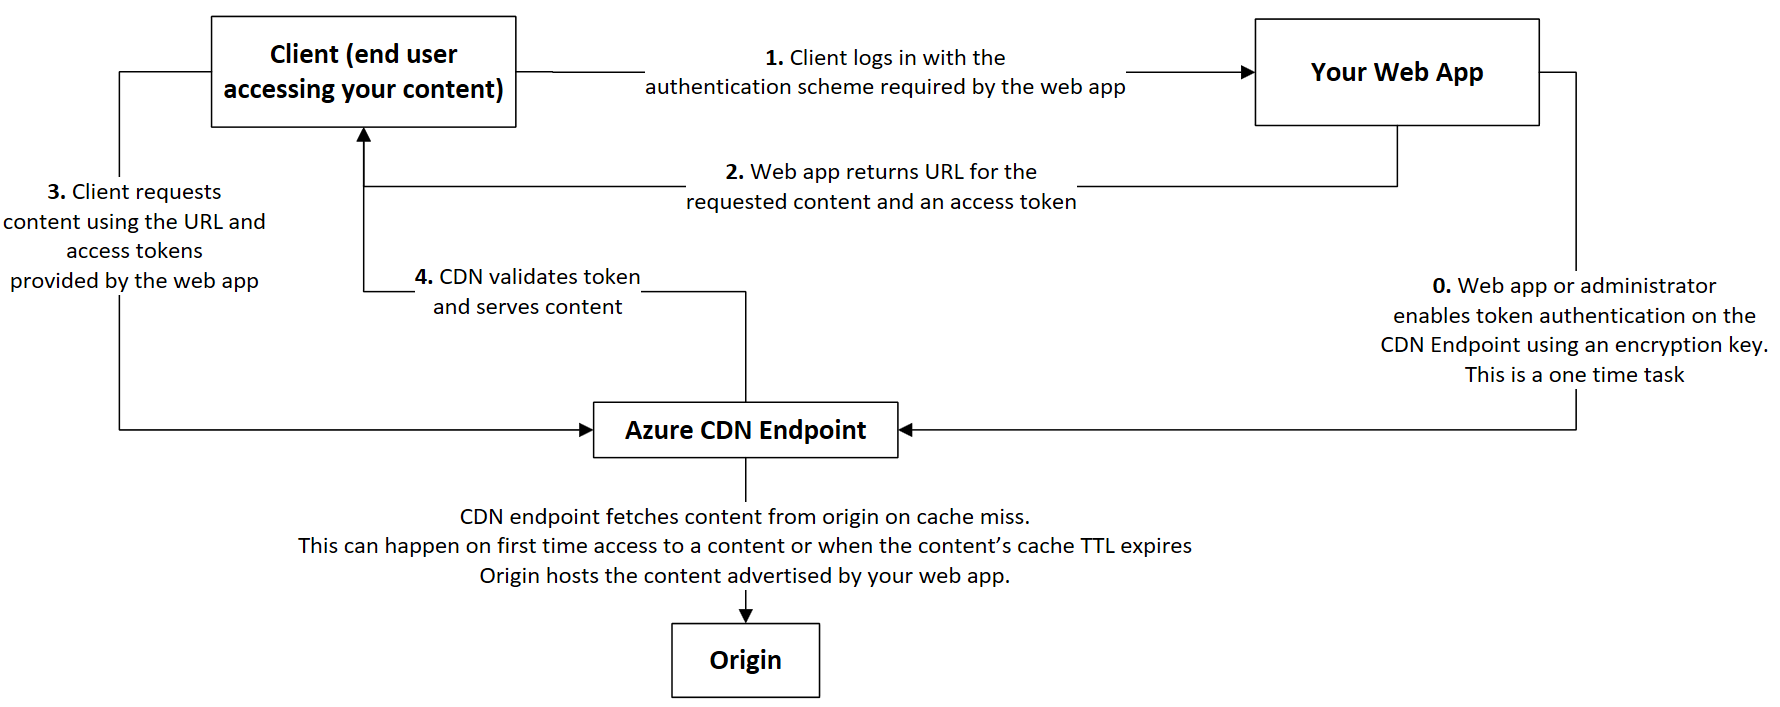 Cuplikan layar alur kerja autentikasi token jaringan pengiriman konten.